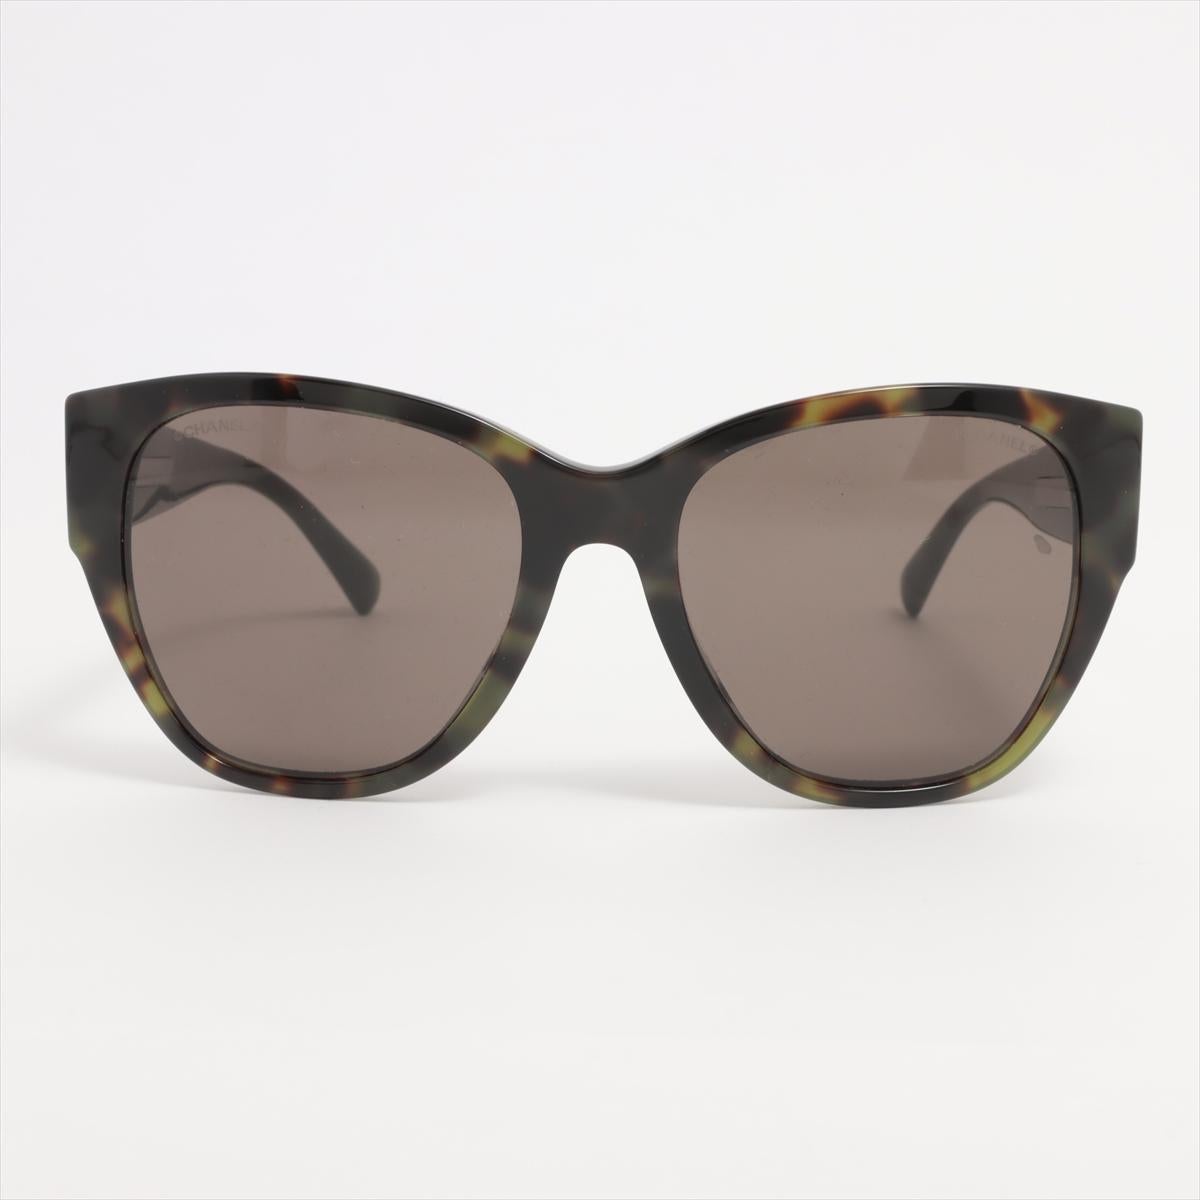 Die Chanel CC Logo Brown Tortoise Shell Acetate Sunglasses ist eine glamouröse und raffinierte Brillenwahl, die klassisches Design und moderne Anziehungskraft nahtlos miteinander verbindet. Die aus hochwertigem Schildpatt-Acetat gefertigte Fassung